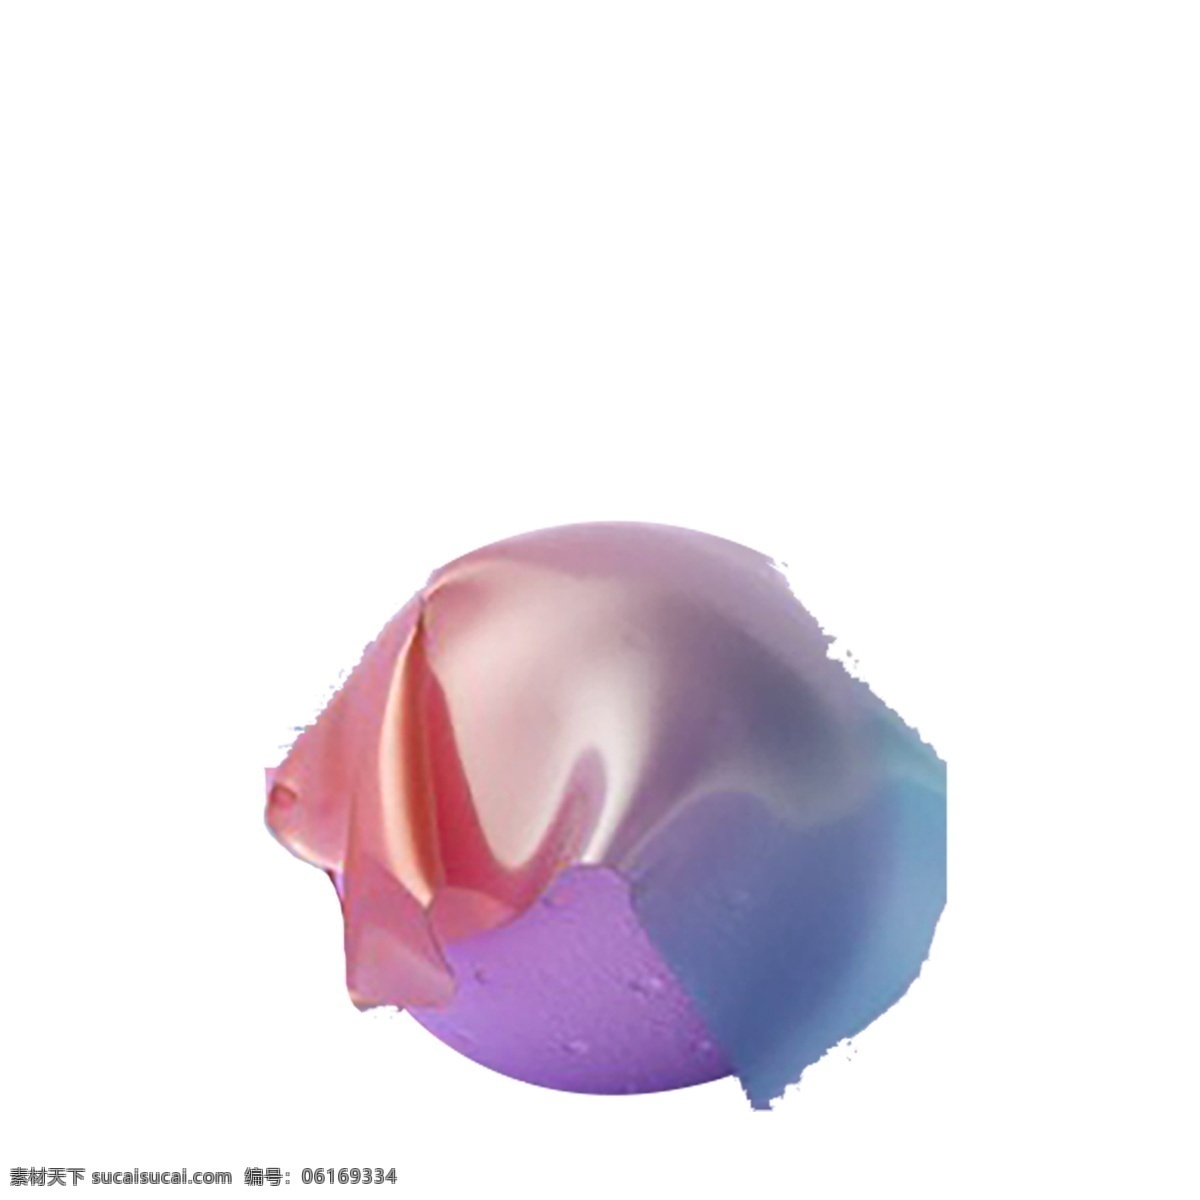 紫色 圆球 免 抠 图 3d立体圆球 时尚造型 卡通图案 卡通插画 3d立体结构 立体造型 紫色的圆球 免抠图